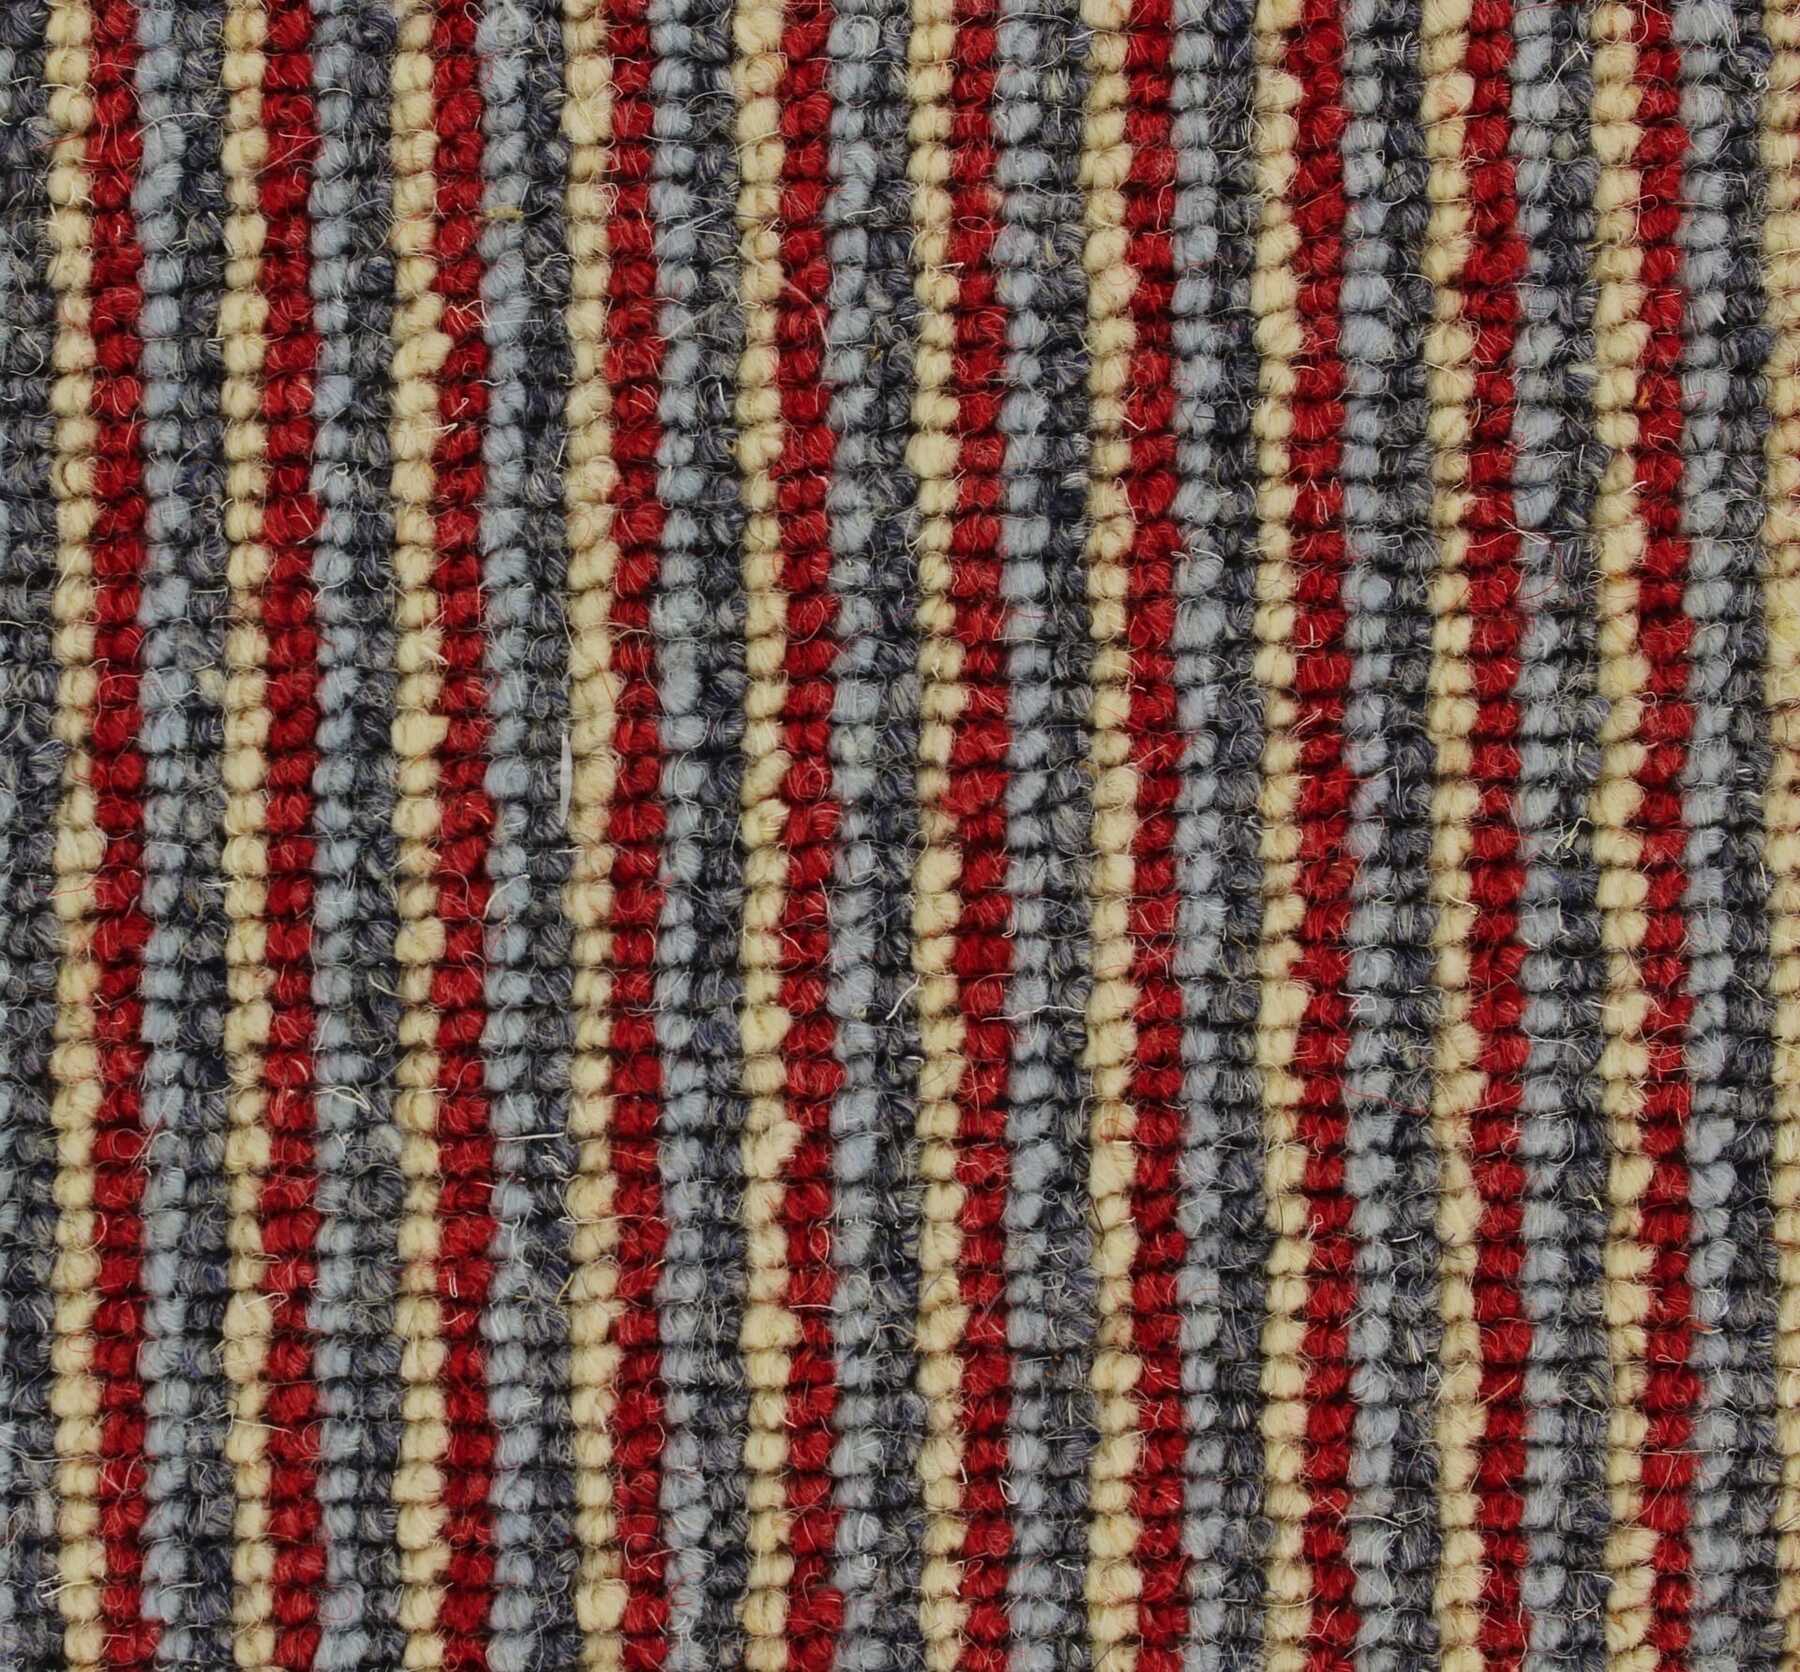 Mainline 345 Chancery Lane carpet by Edel Telenzo Carpets